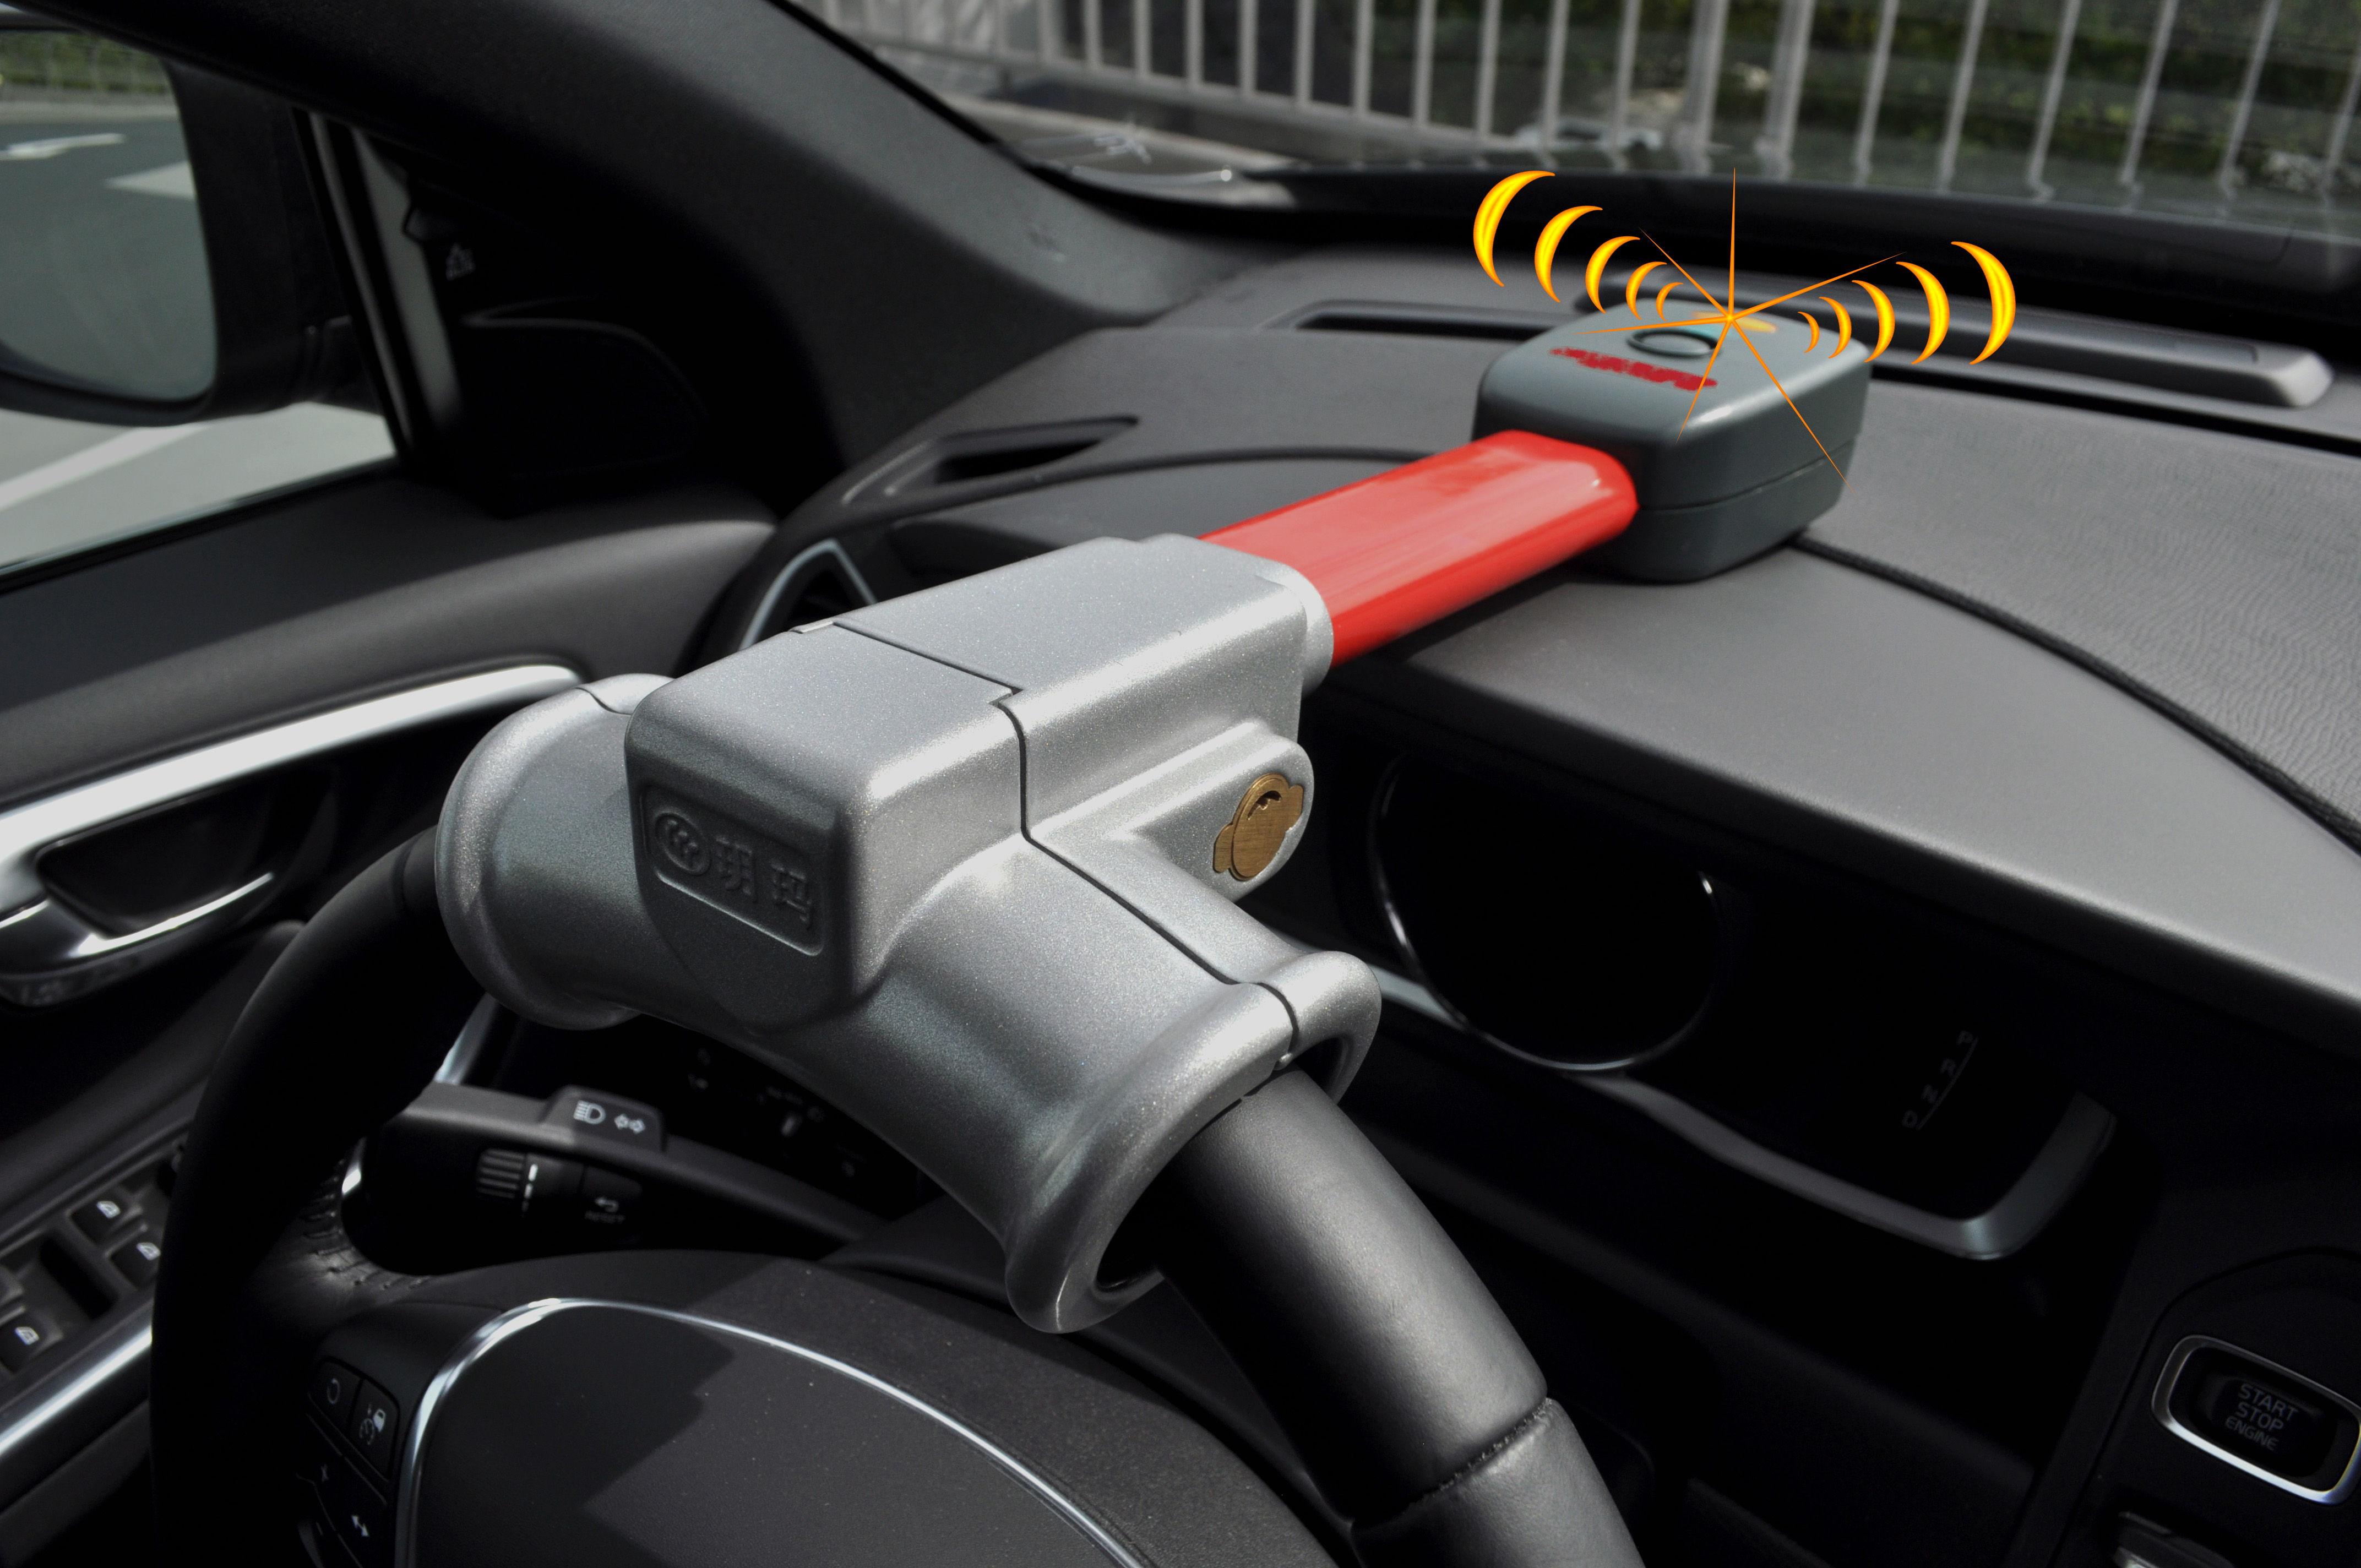 BETEC Ideen - Ideen rund um den Haushalt - Steering Wheel Anti-Theft Alarm  with Lock and infrared Remote Control